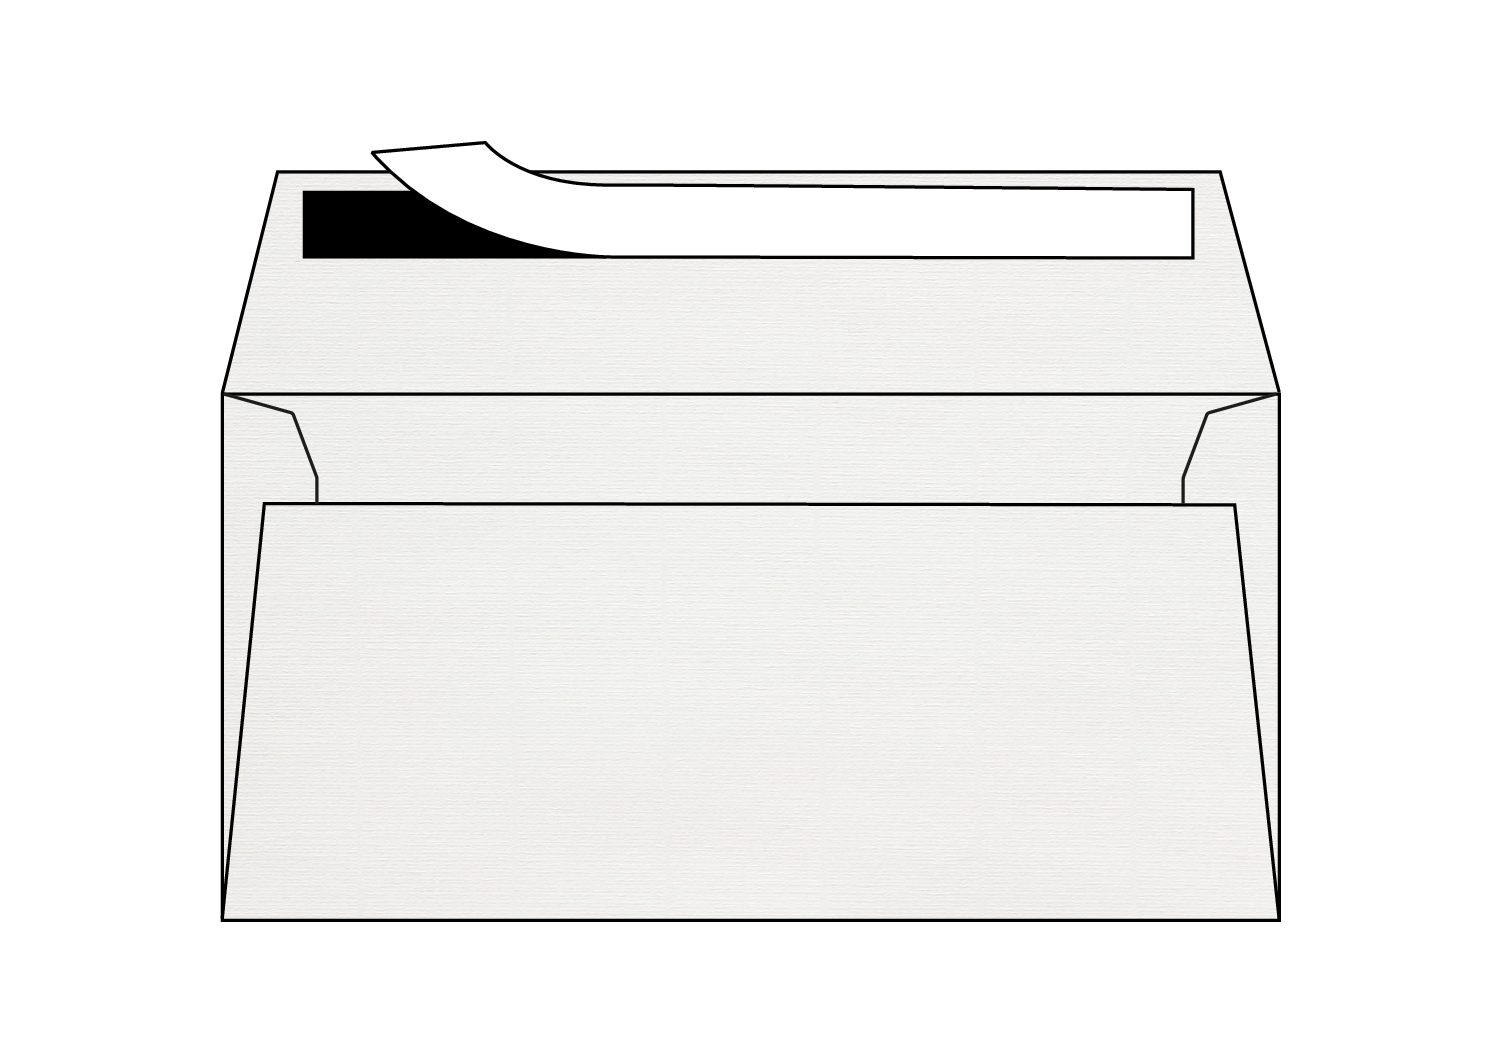 Fin de série - Enveloppes Basix vergé blanc 120g/m² 114 x 229 mm stripcol